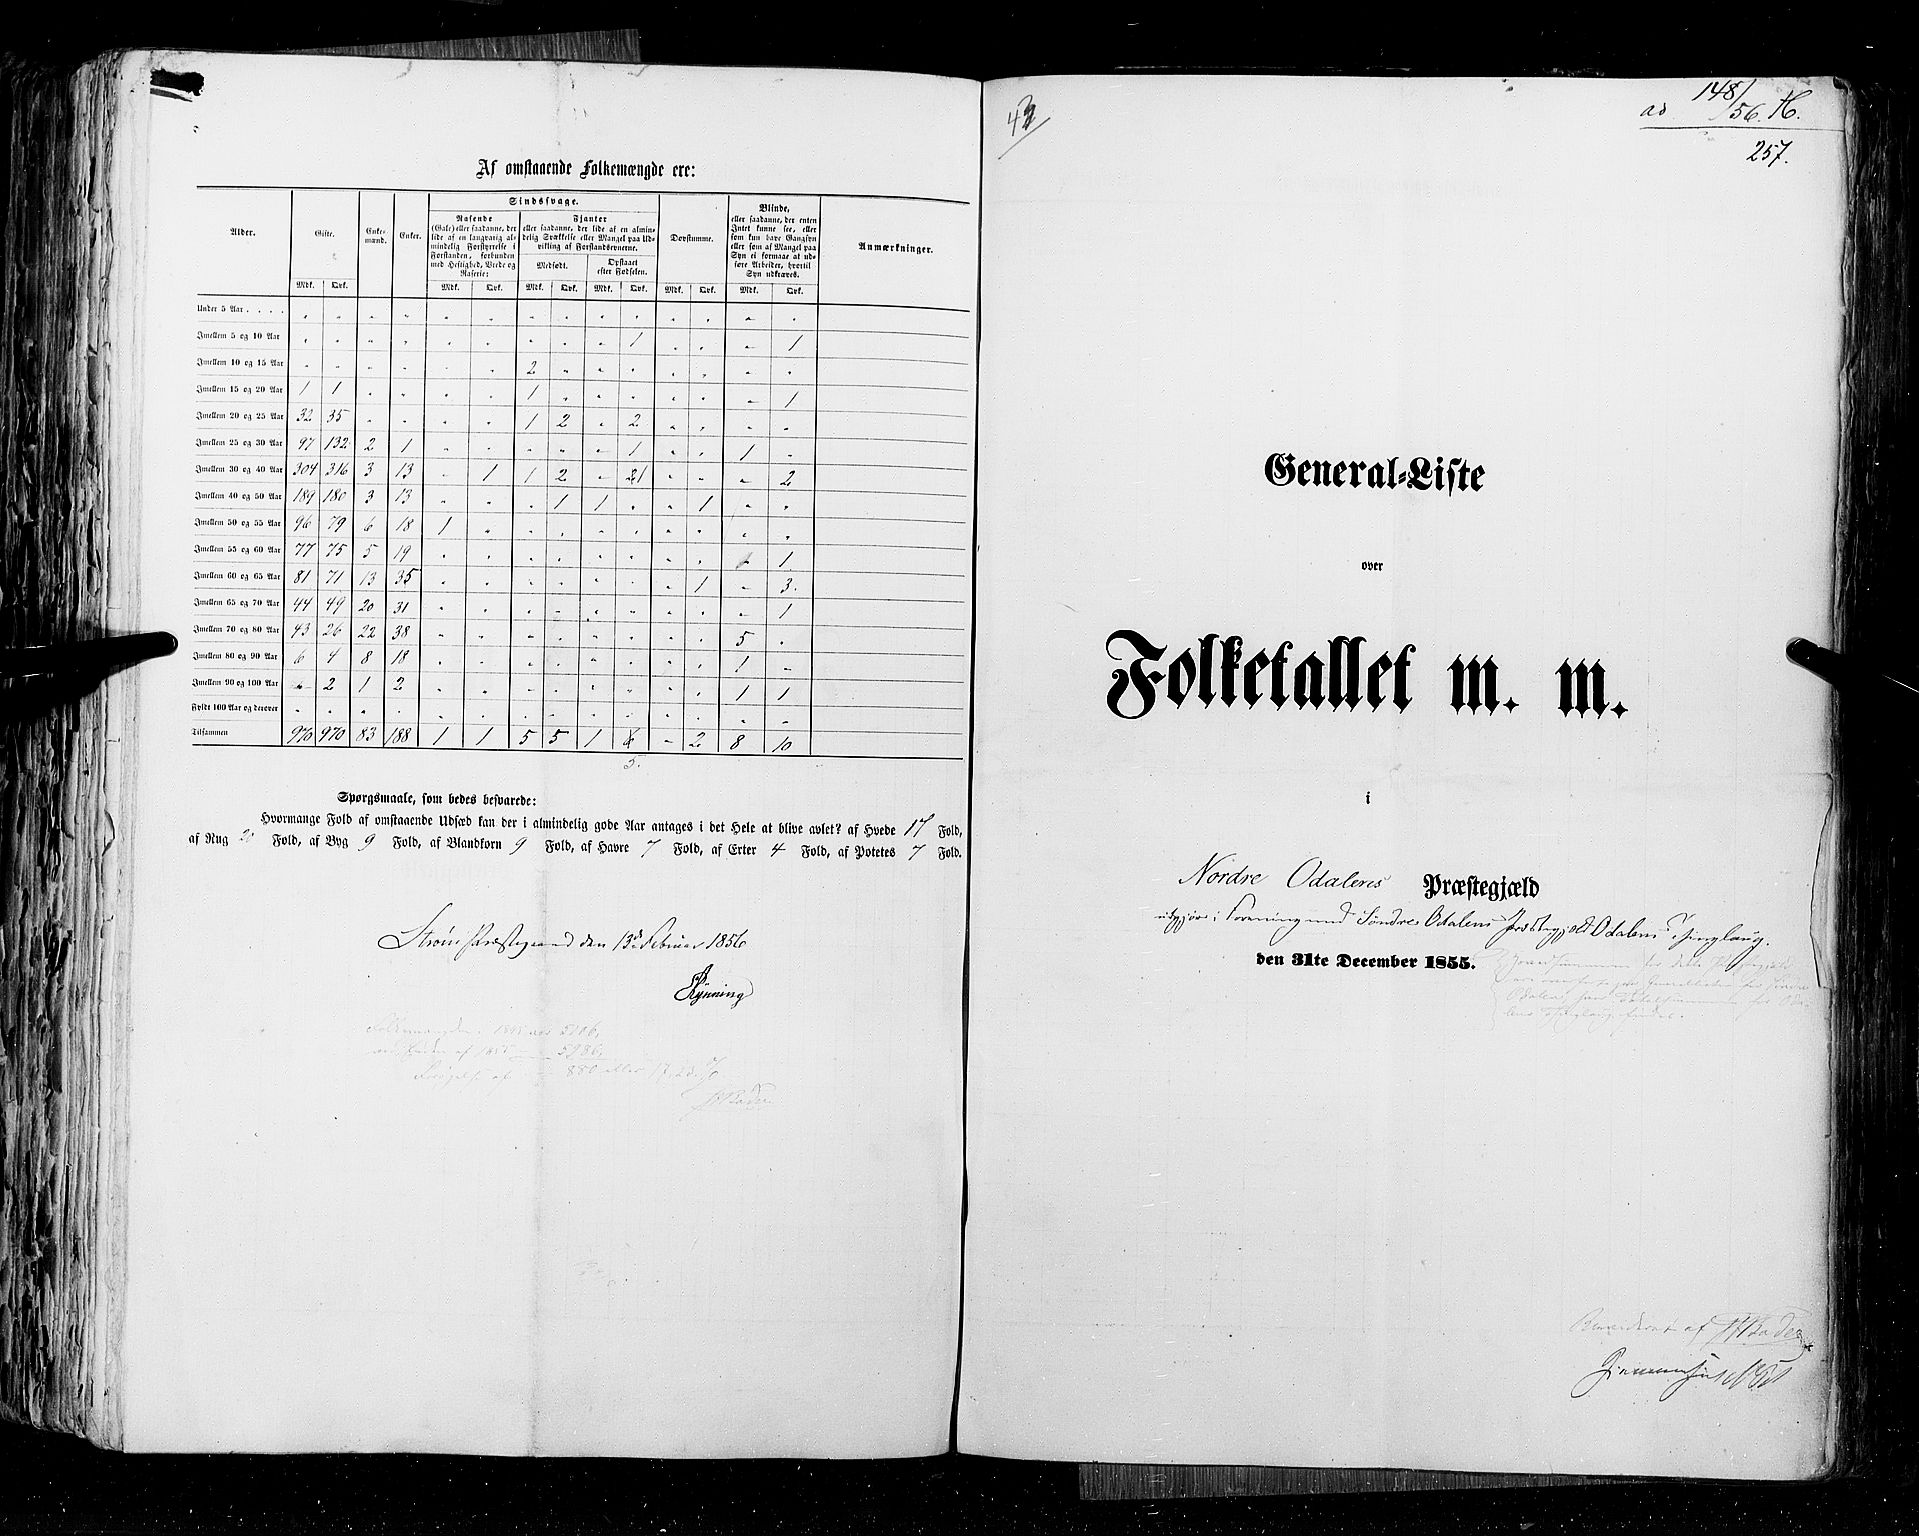 RA, Folketellingen 1855, bind 1: Akershus amt, Smålenenes amt og Hedemarken amt, 1855, s. 257